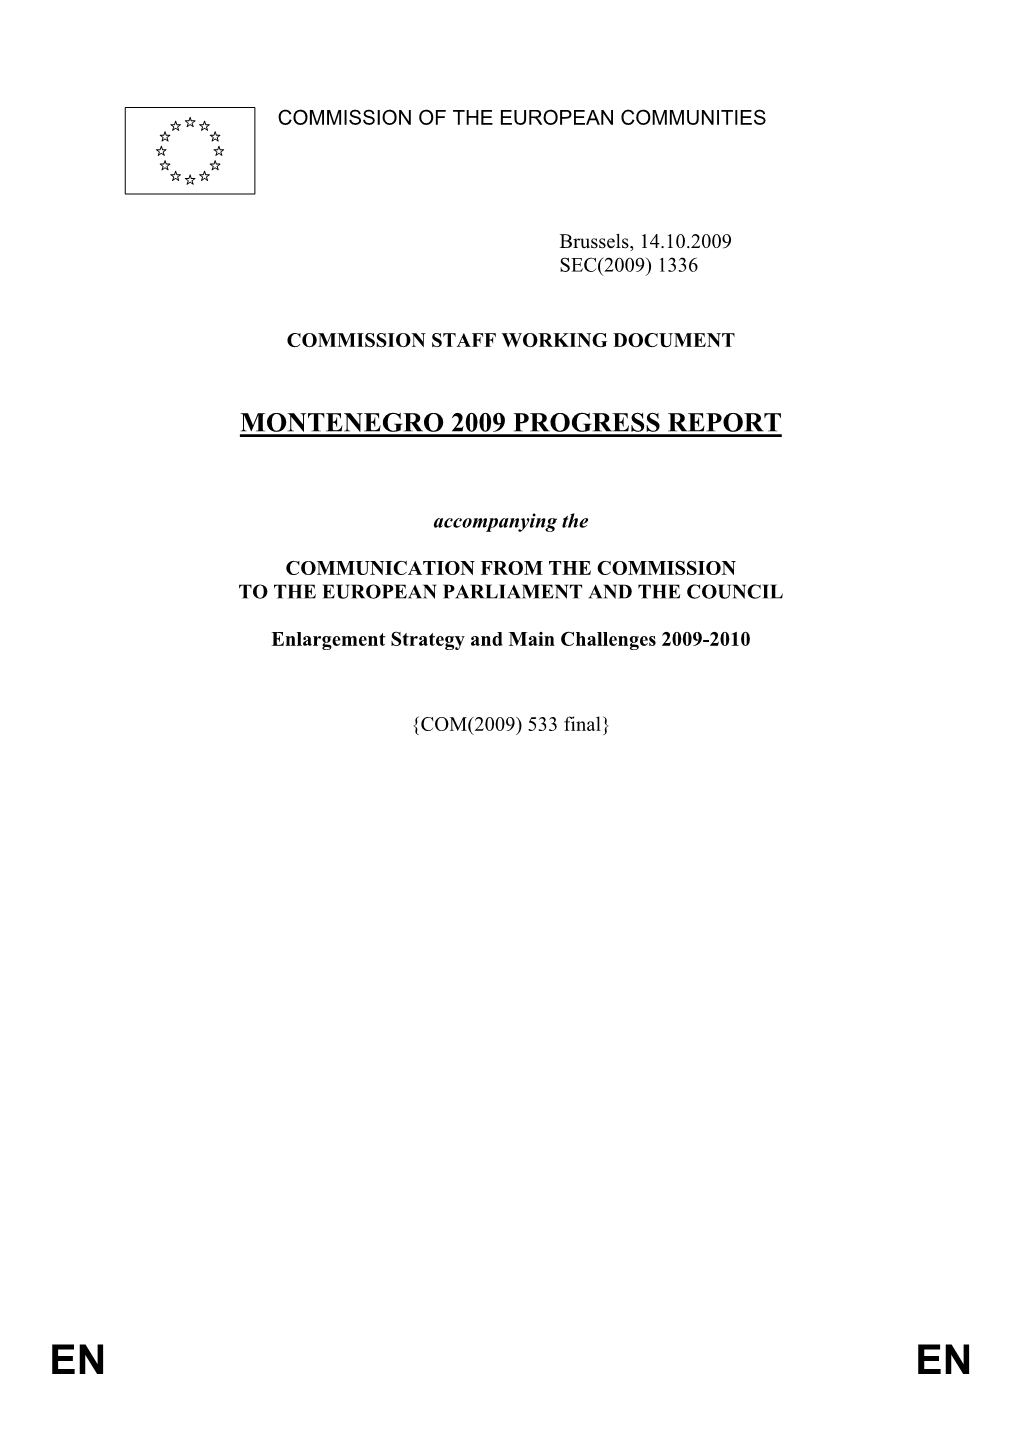 Montenegro 2009 Progress Report